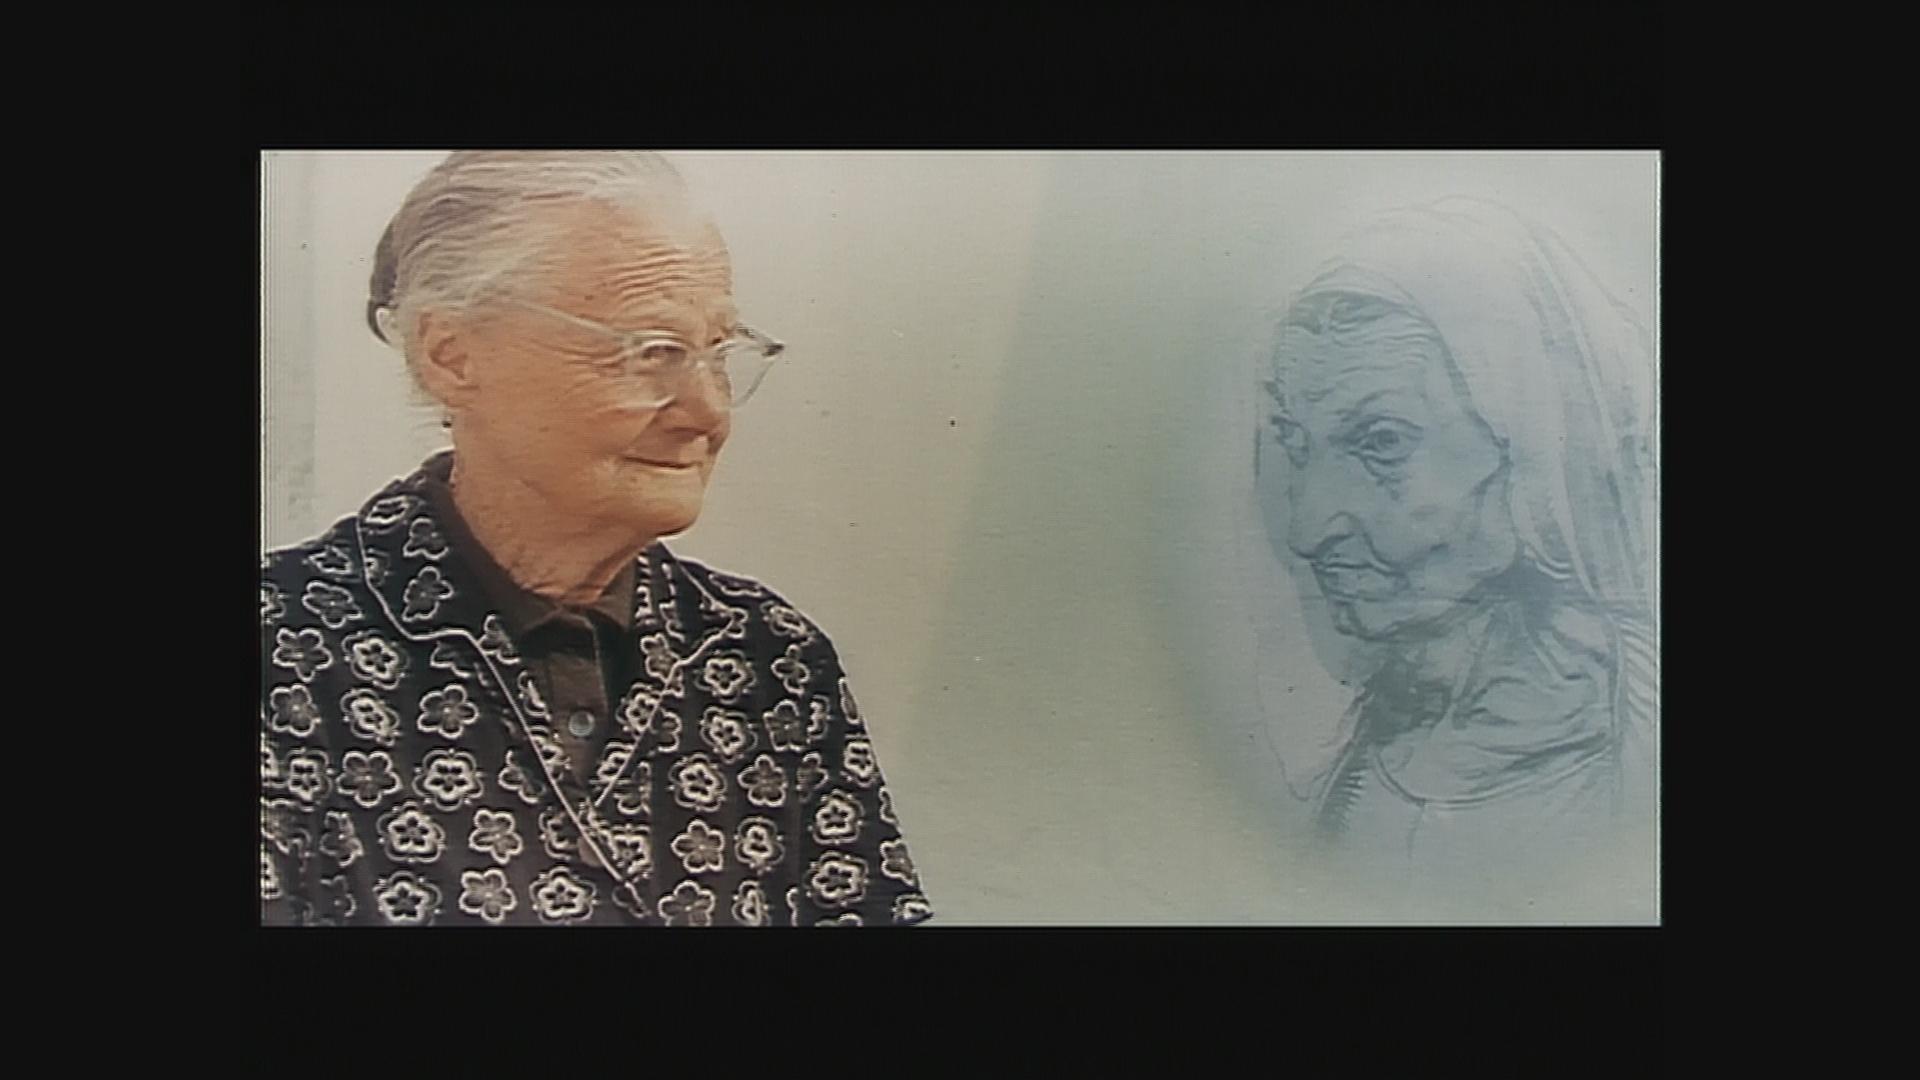 Eine alte Frau mit Brille und eng zurückgebundenem weißen Haar sitzt links im Bild und blickt zur rechten Seite. Dort wird eine Zeichnung eingeblendet: das Porträt einer alten Frau. Die beiden (Frau und Zeichnung) schauen sich an.